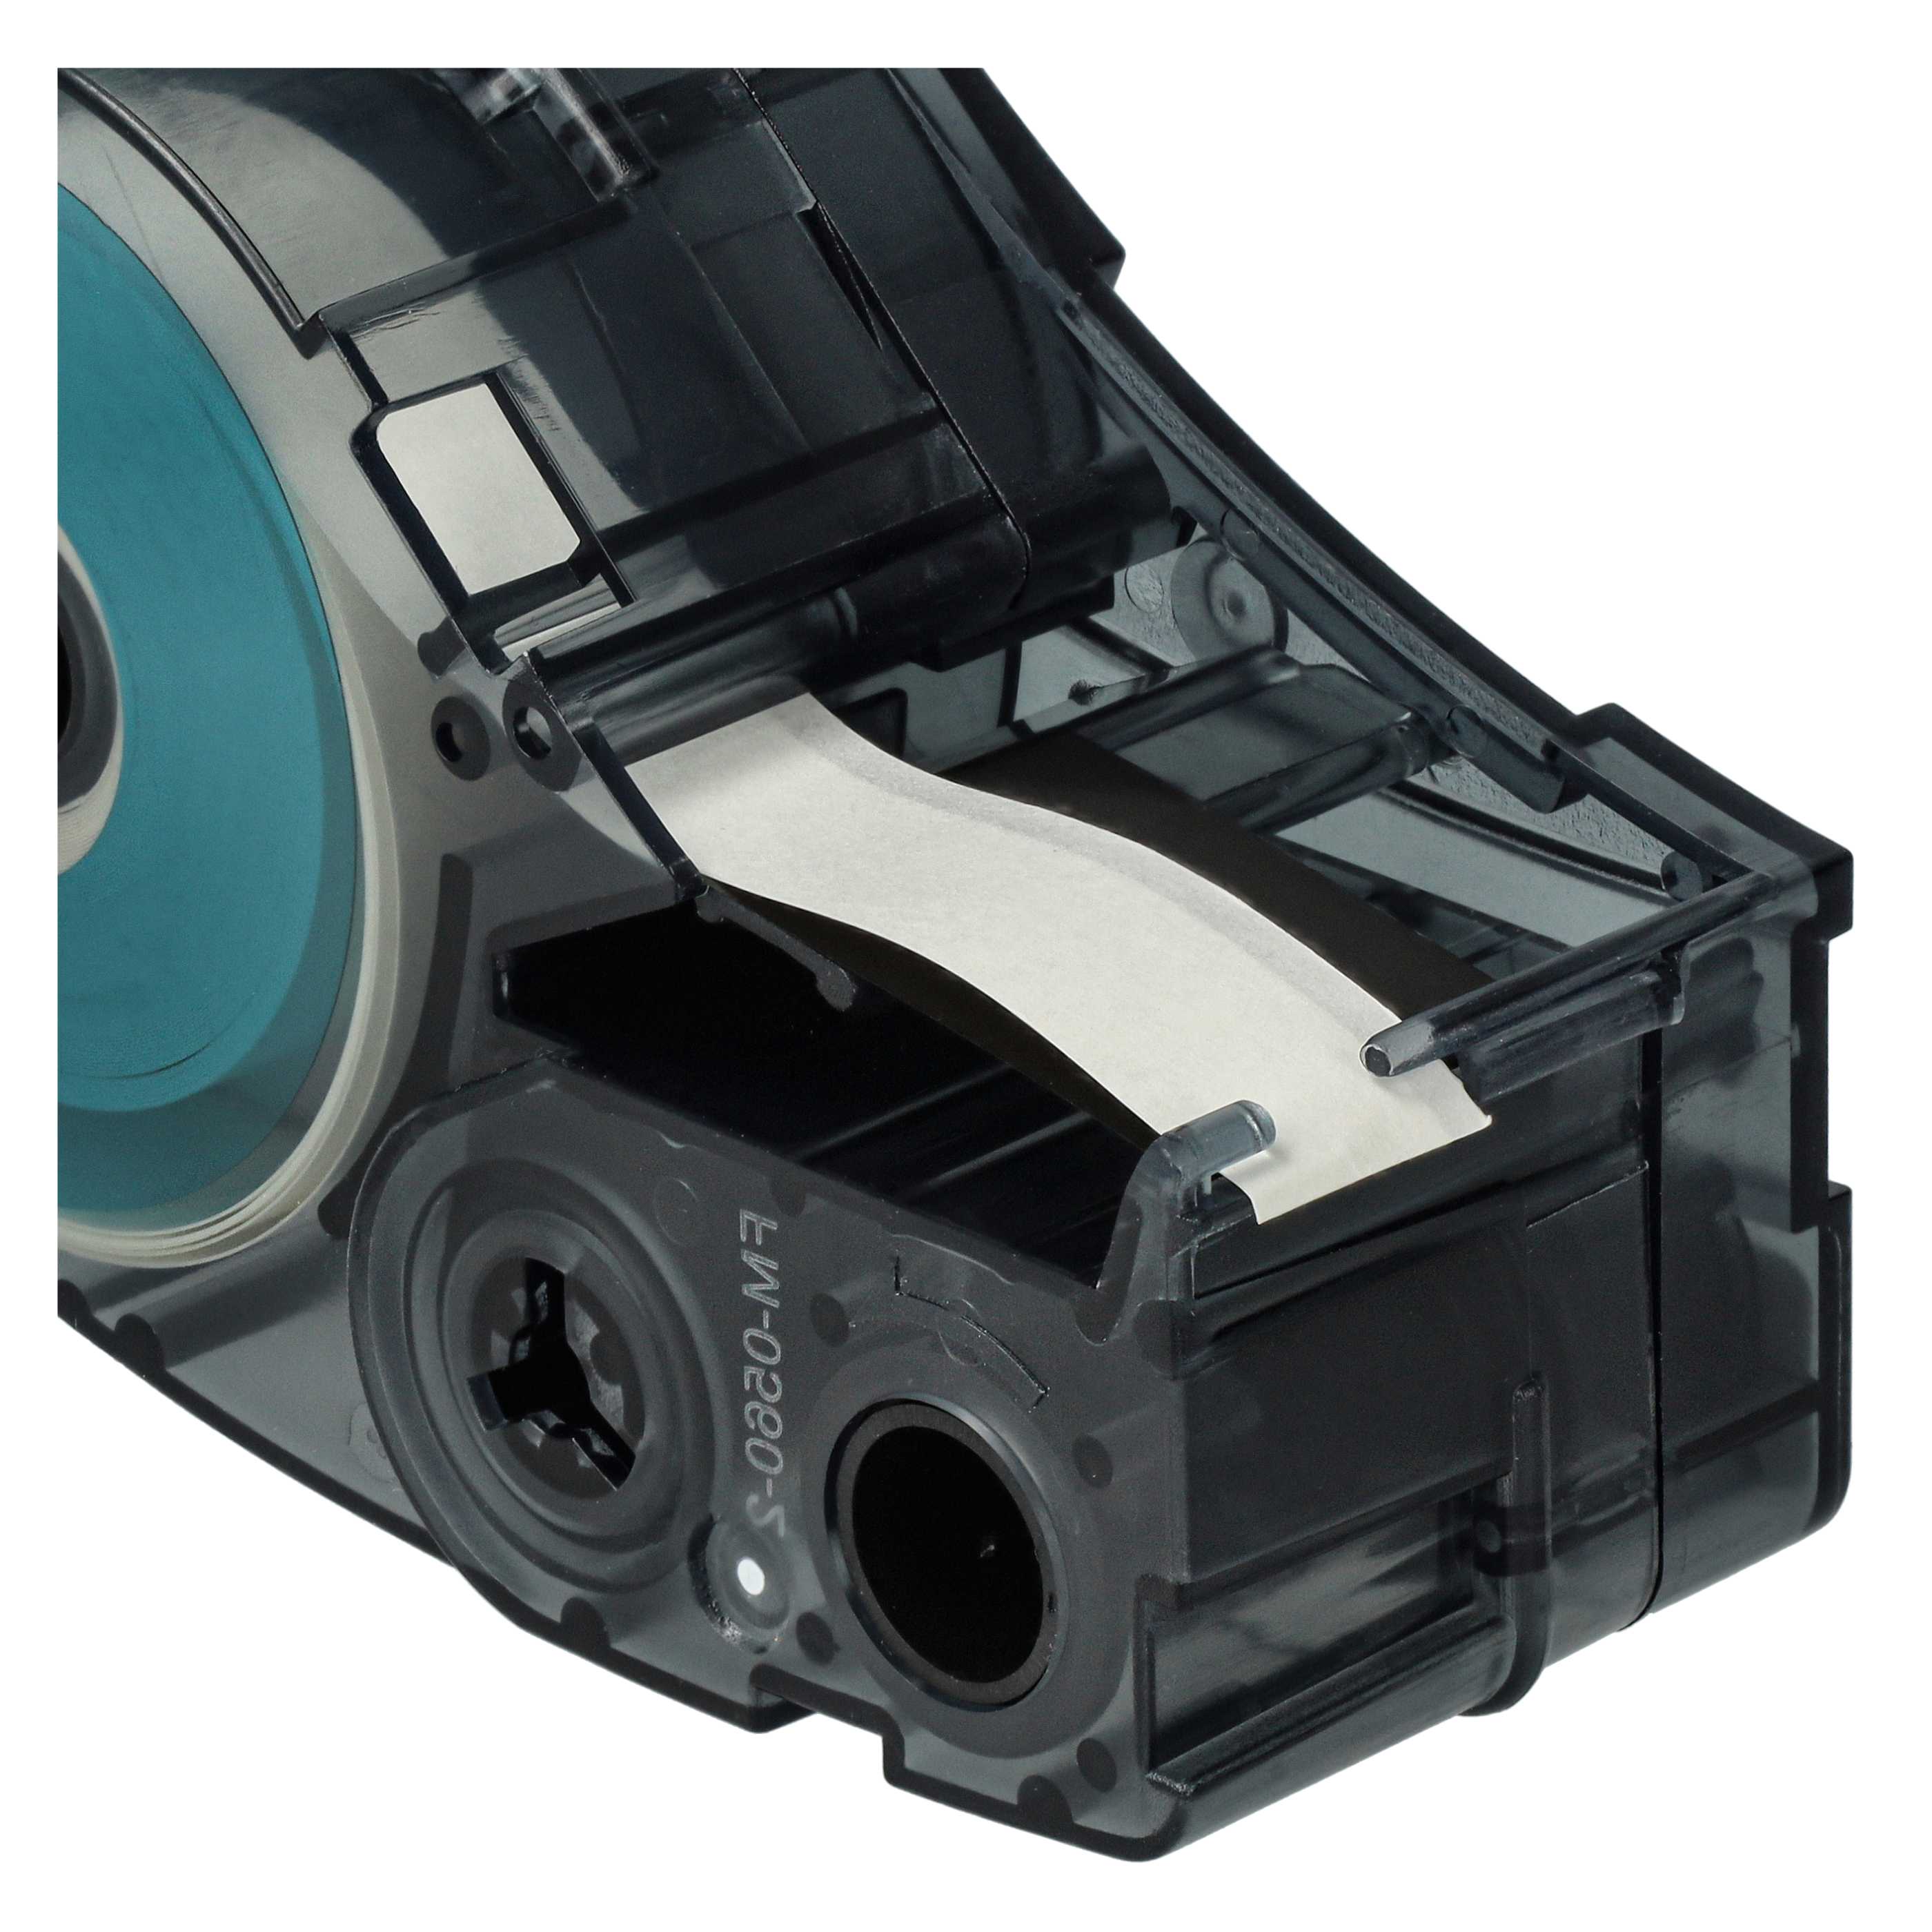 5x Cassettes à ruban remplacent Brady M21-375-423 - 9,53mm lettrage Noir ruban Blanc, polyester permanent